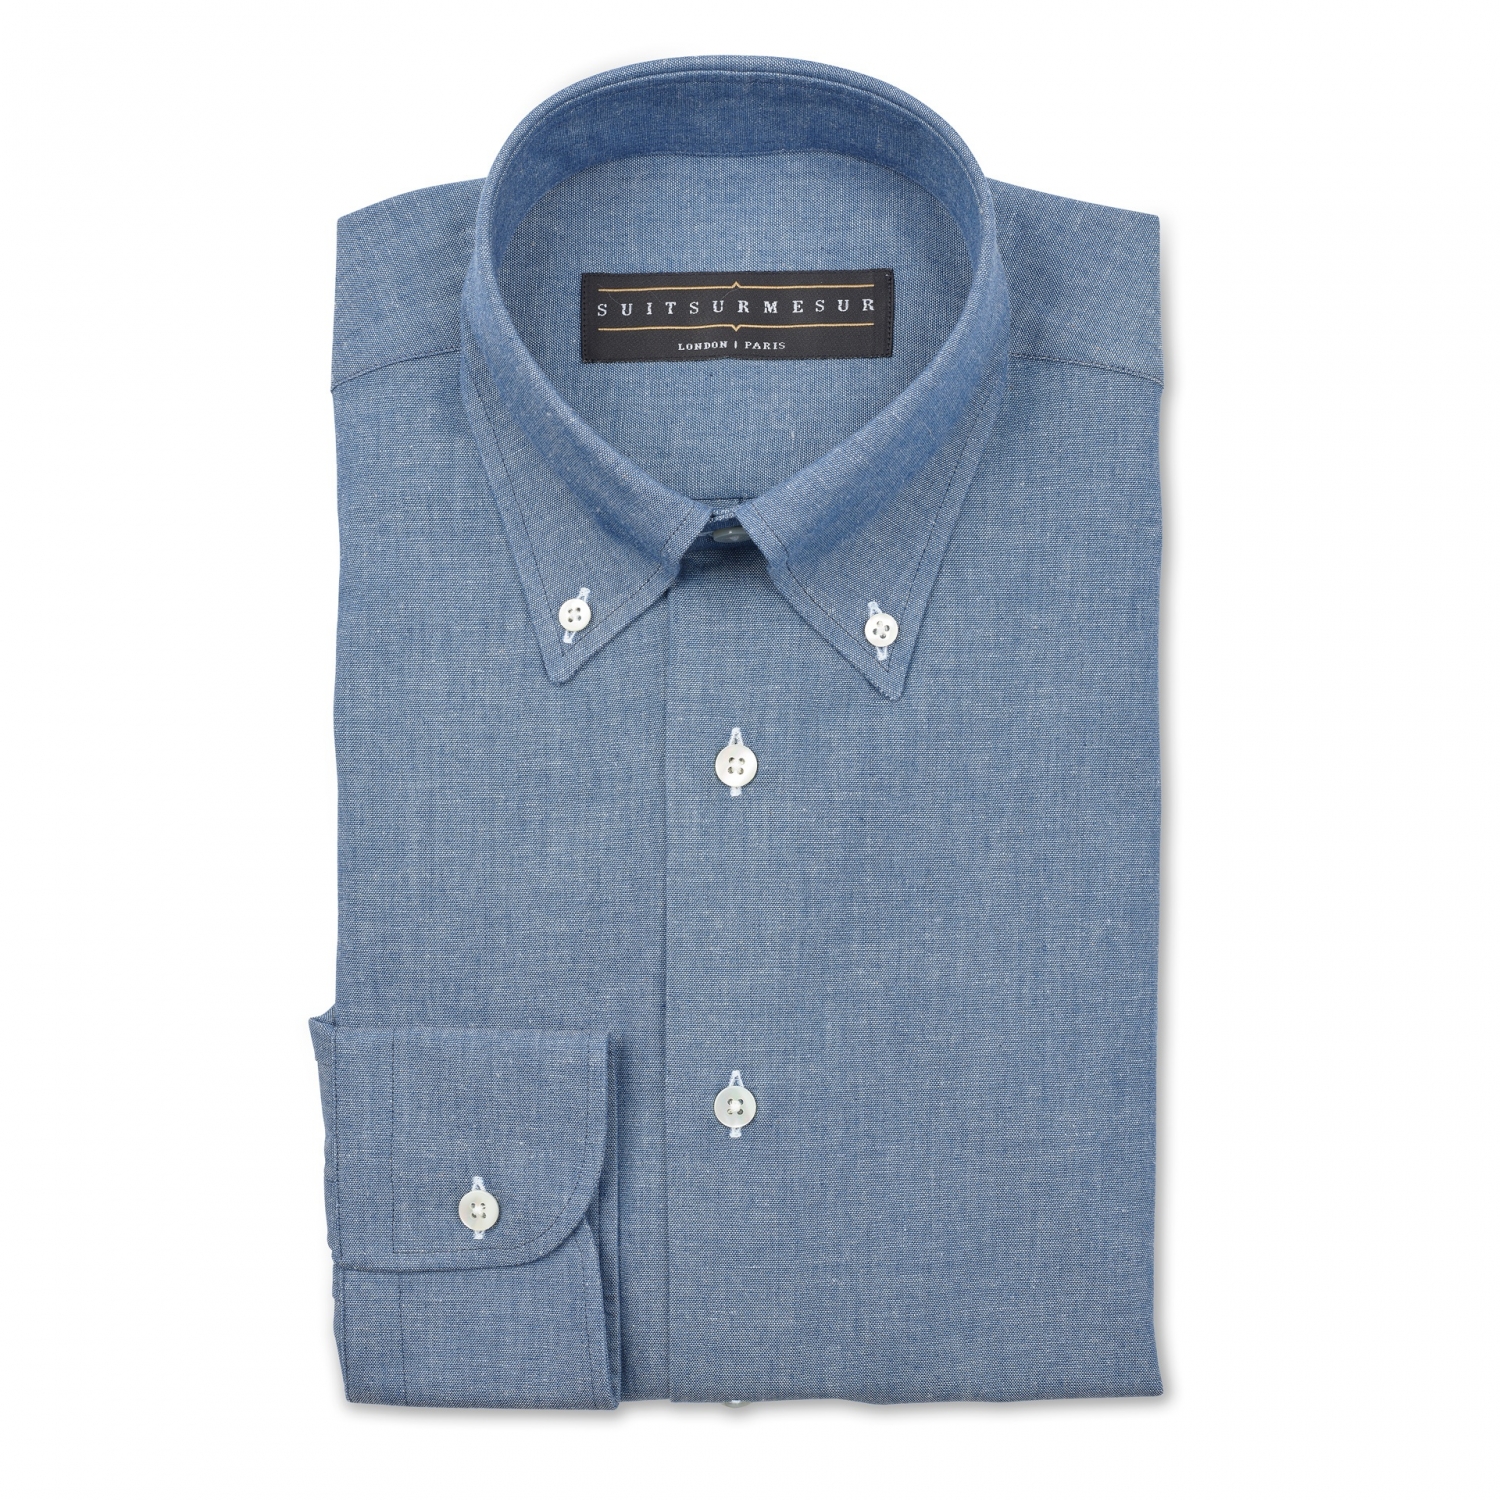 Chambray (OCBD) dress shirt – 100% cotton Canclini fabric